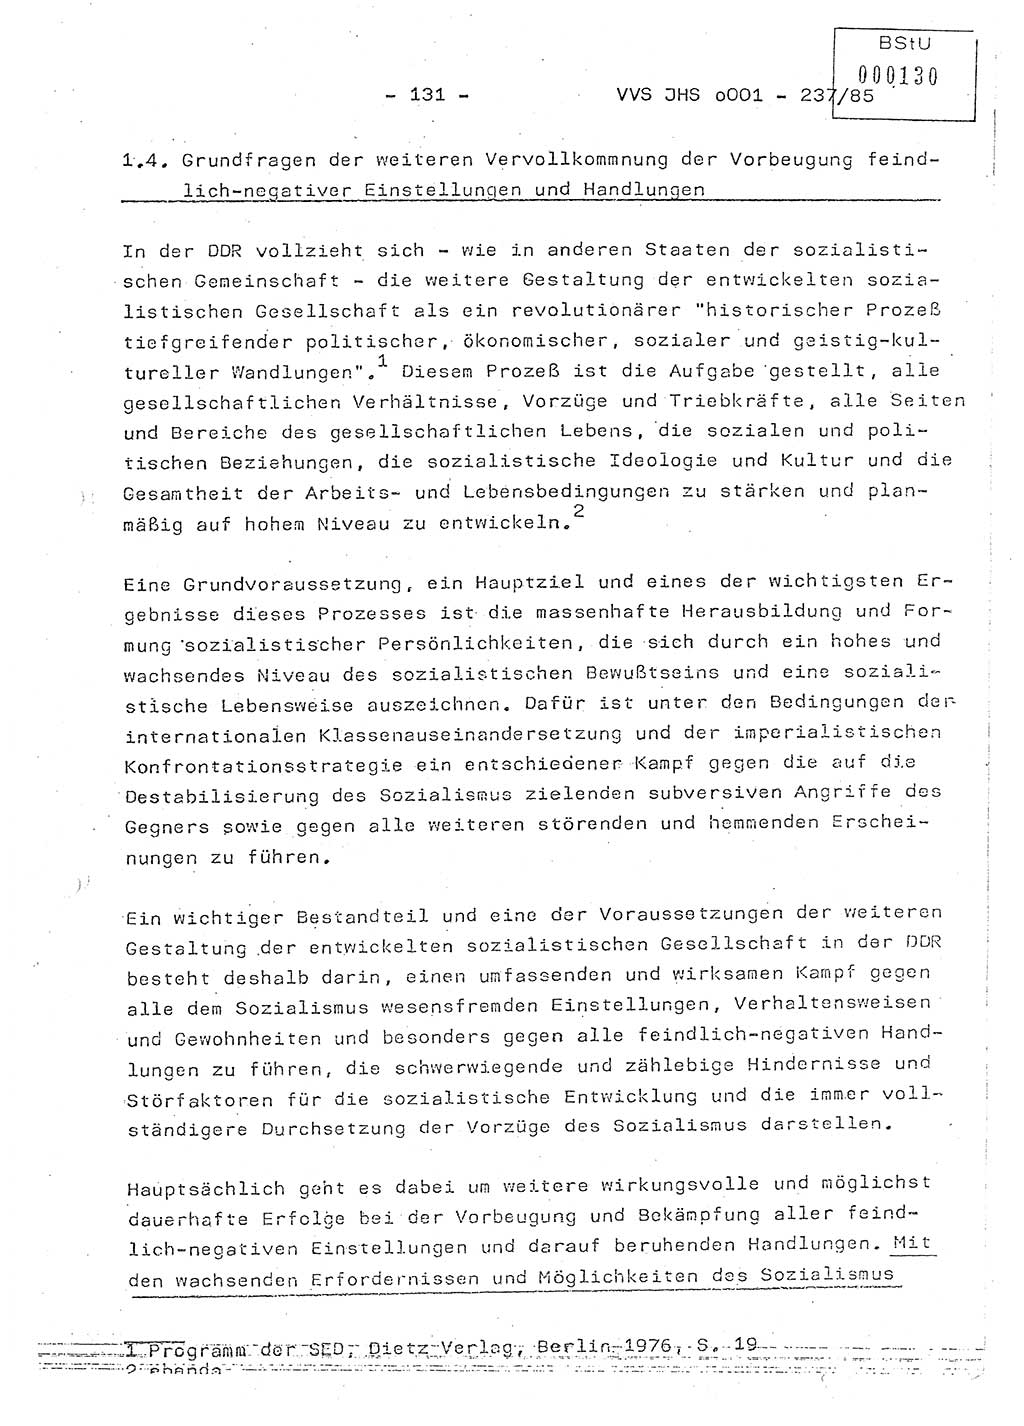 Dissertation Oberstleutnant Peter Jakulski (JHS), Oberstleutnat Christian Rudolph (HA Ⅸ), Major Horst Böttger (ZMD), Major Wolfgang Grüneberg (JHS), Major Albert Meutsch (JHS), Ministerium für Staatssicherheit (MfS) [Deutsche Demokratische Republik (DDR)], Juristische Hochschule (JHS), Vertrauliche Verschlußsache (VVS) o001-237/85, Potsdam 1985, Seite 131 (Diss. MfS DDR JHS VVS o001-237/85 1985, S. 131)